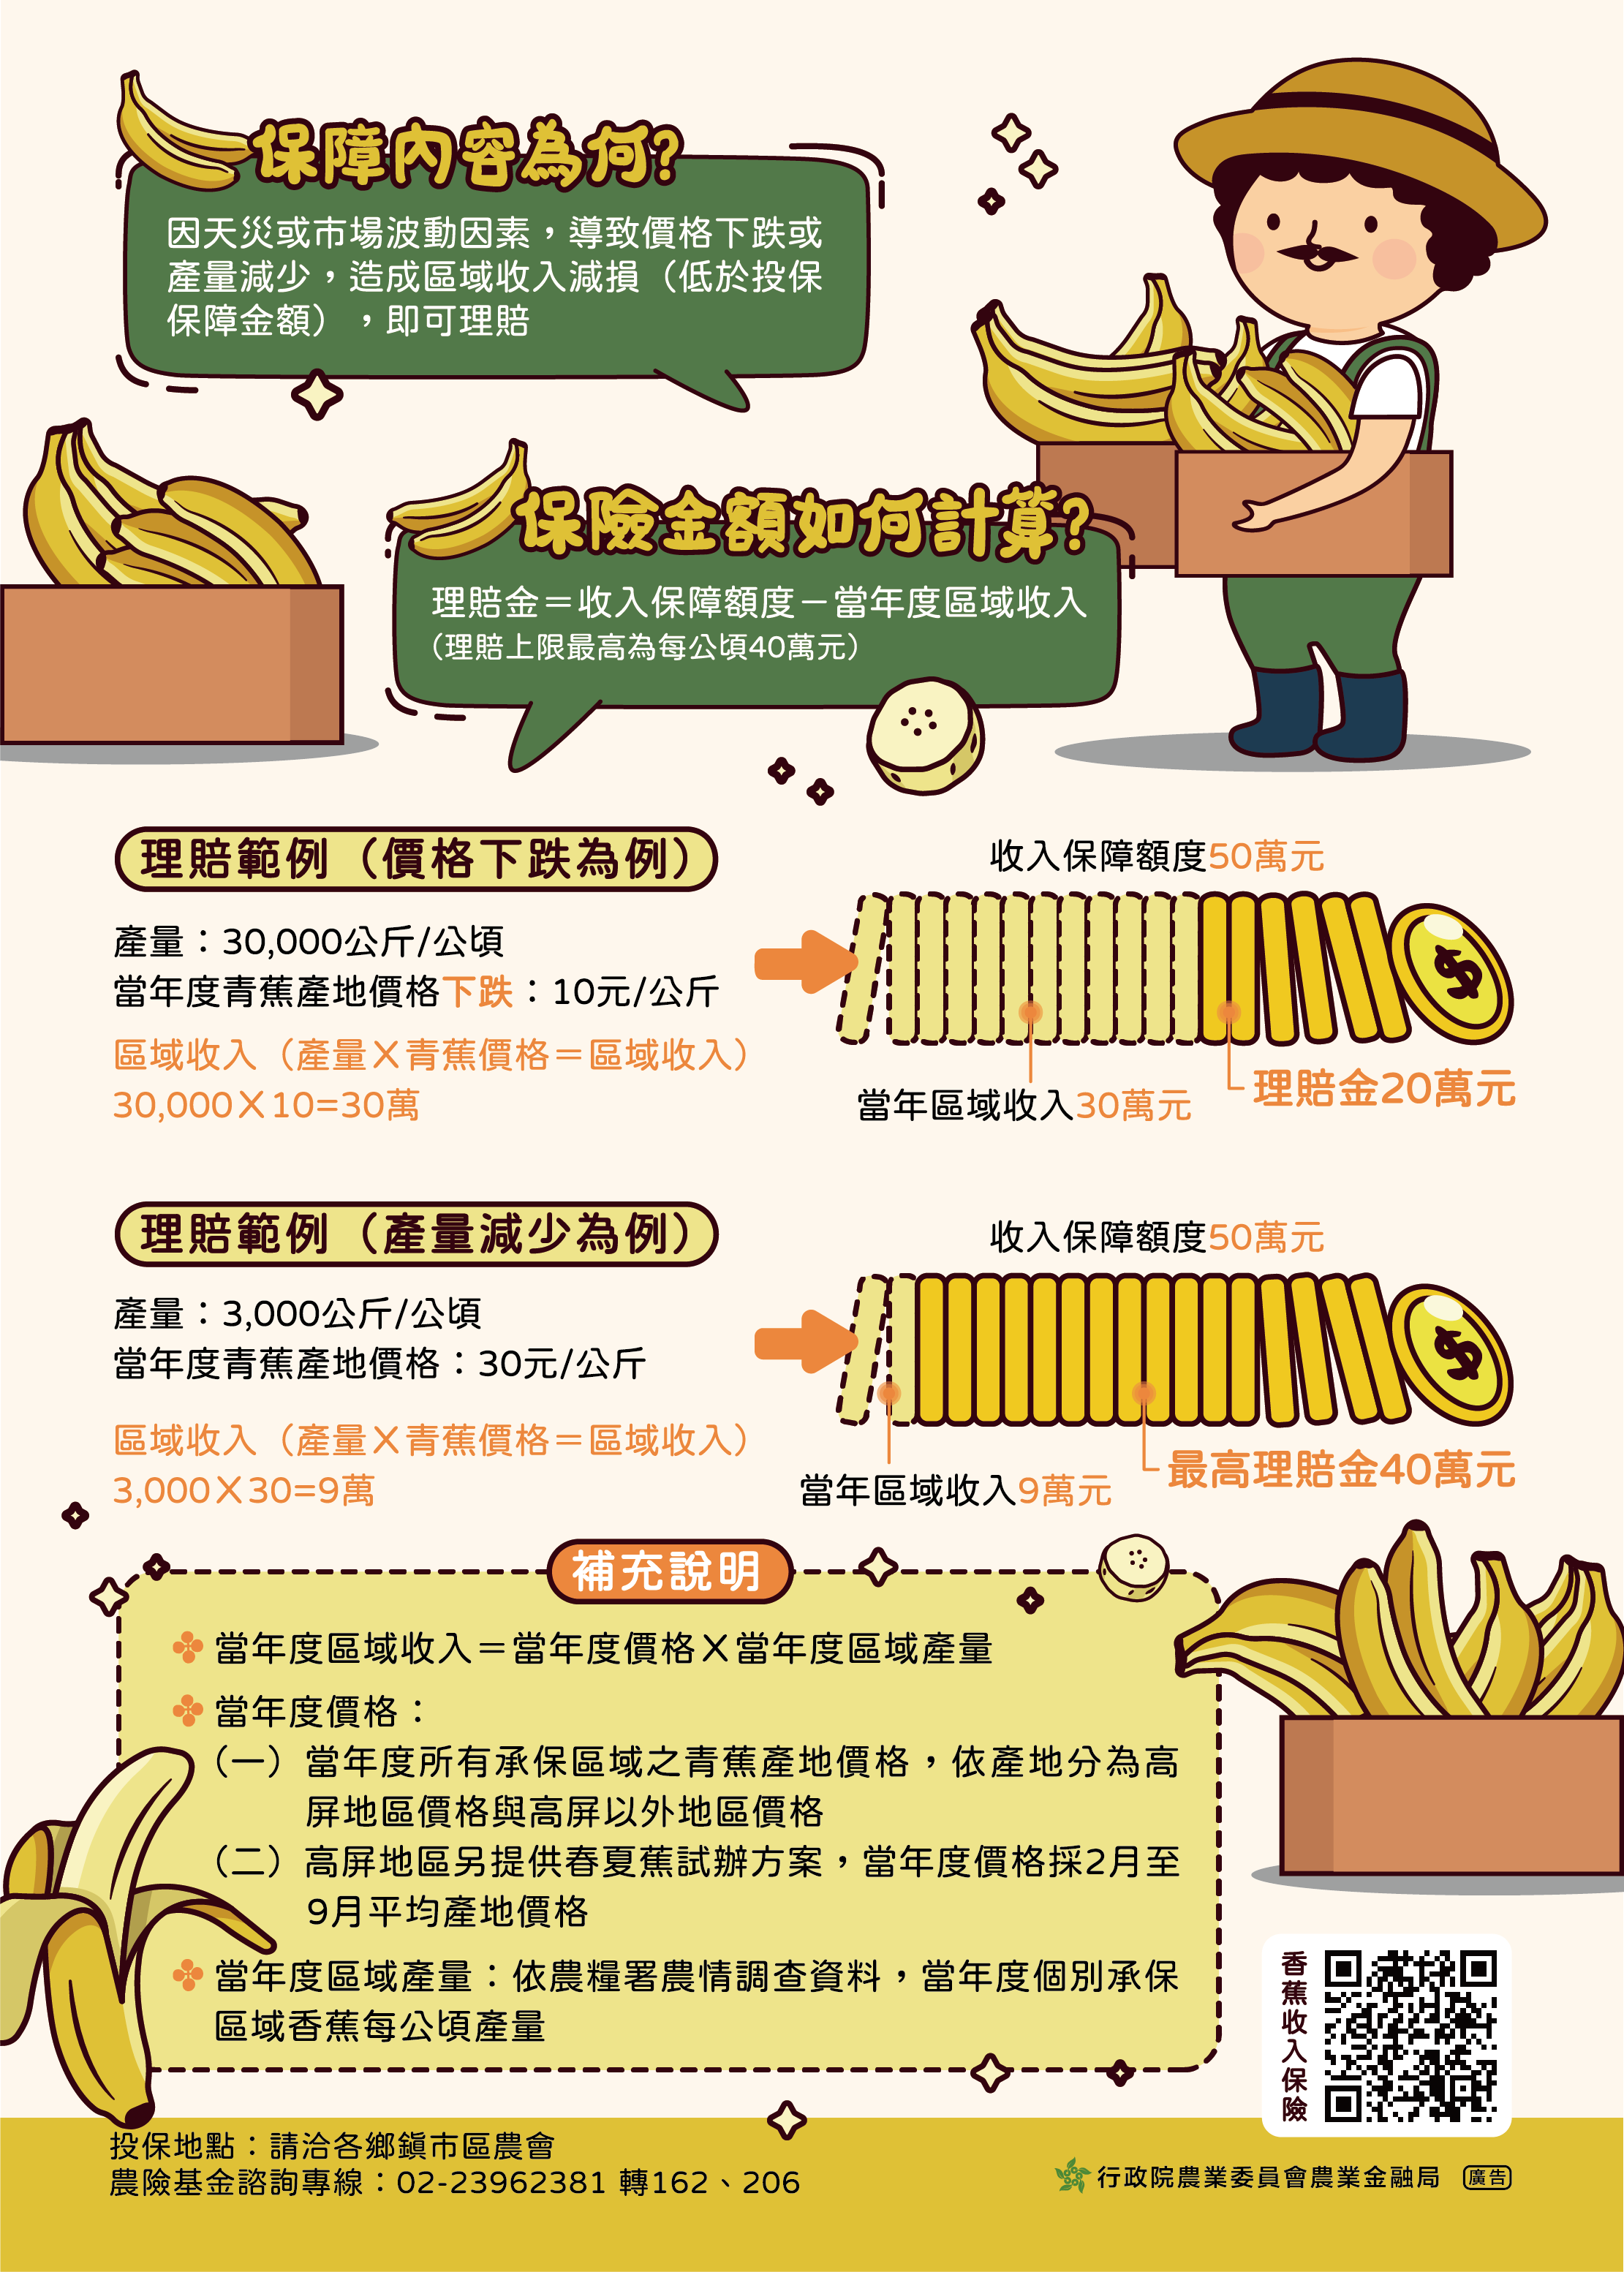 中華民國農民團體幹部聯合訓練協會辦理「香蕉收入保險」推廣農業保險